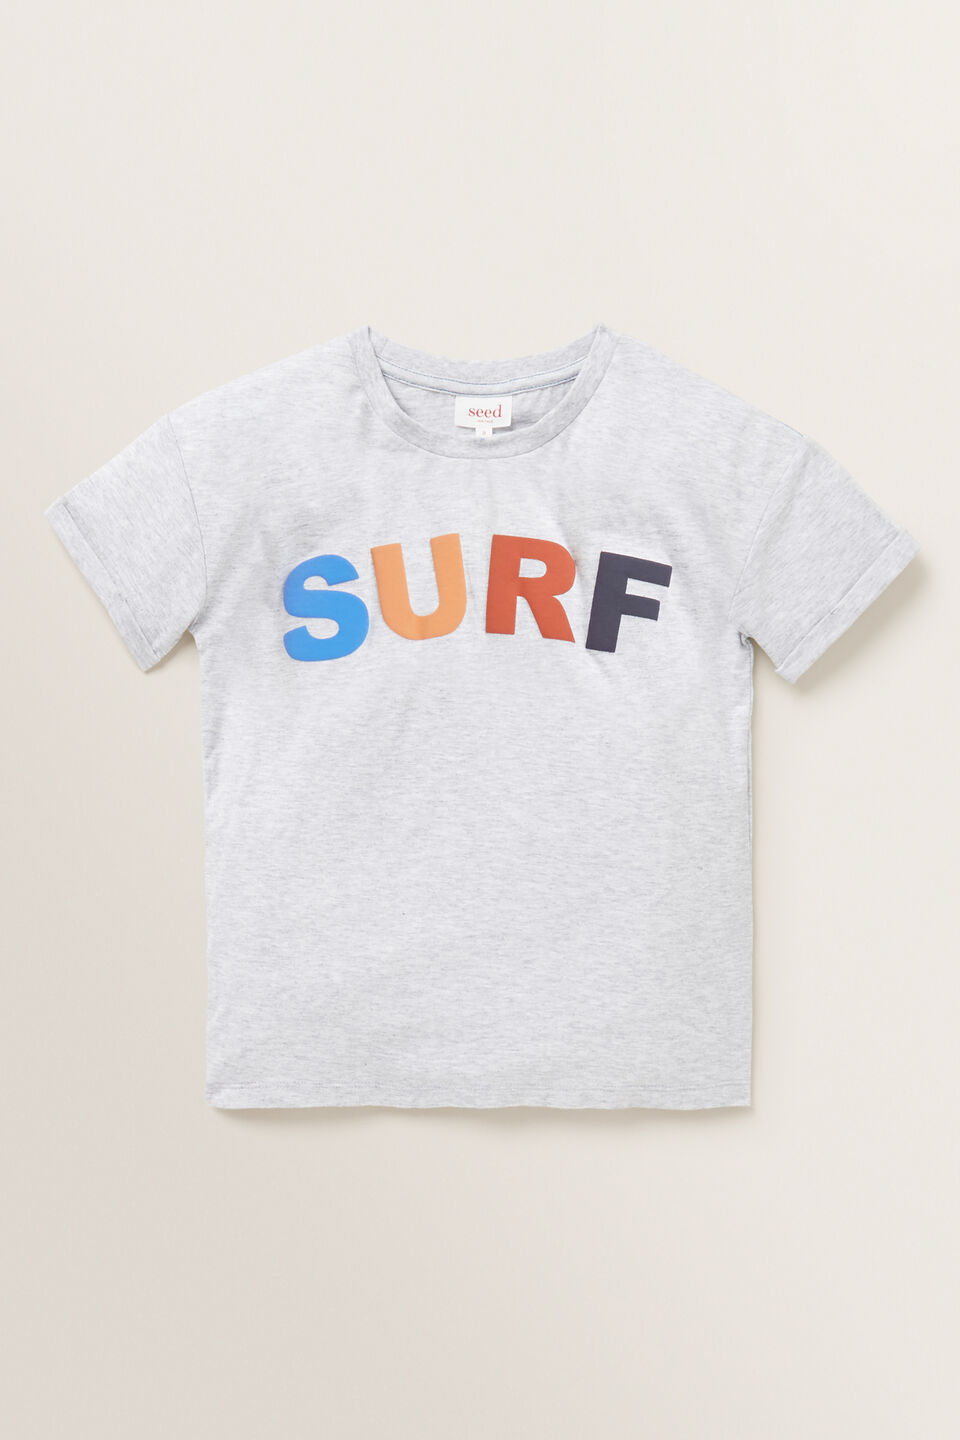 Surf Swim Tee  